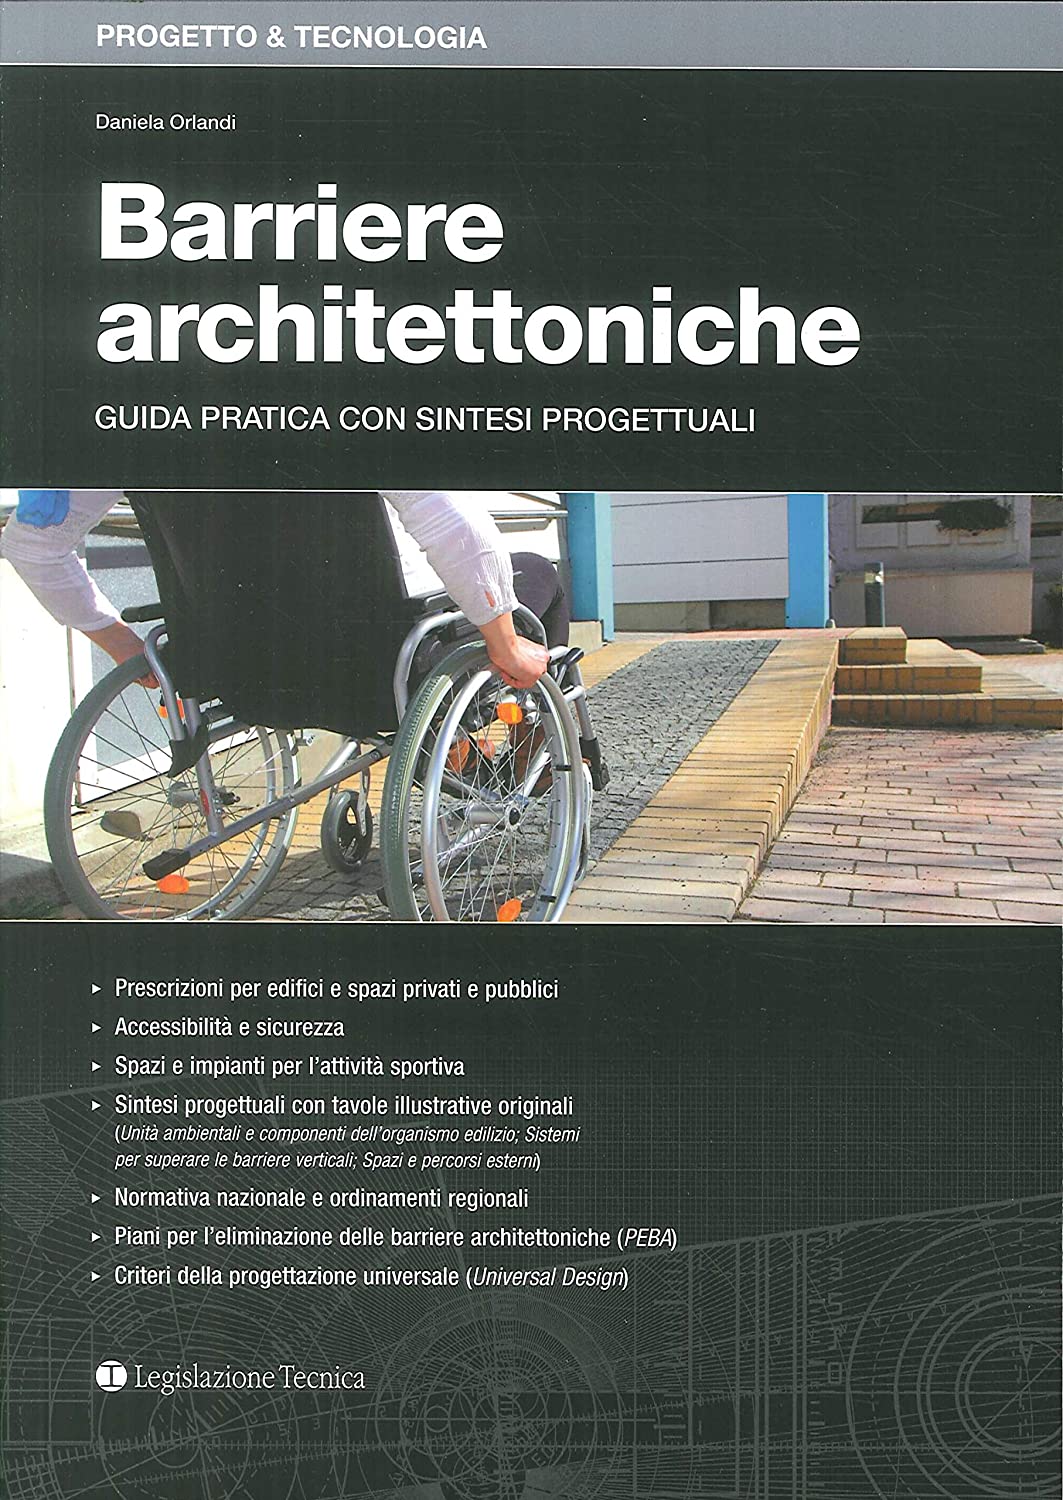 Libri Daniela Orlandi - Barriere Architettoniche. Guida Pratica Con Sintesi Progettuali NUOVO SIGILLATO, EDIZIONE DEL 15/10/2018 SUBITO DISPONIBILE